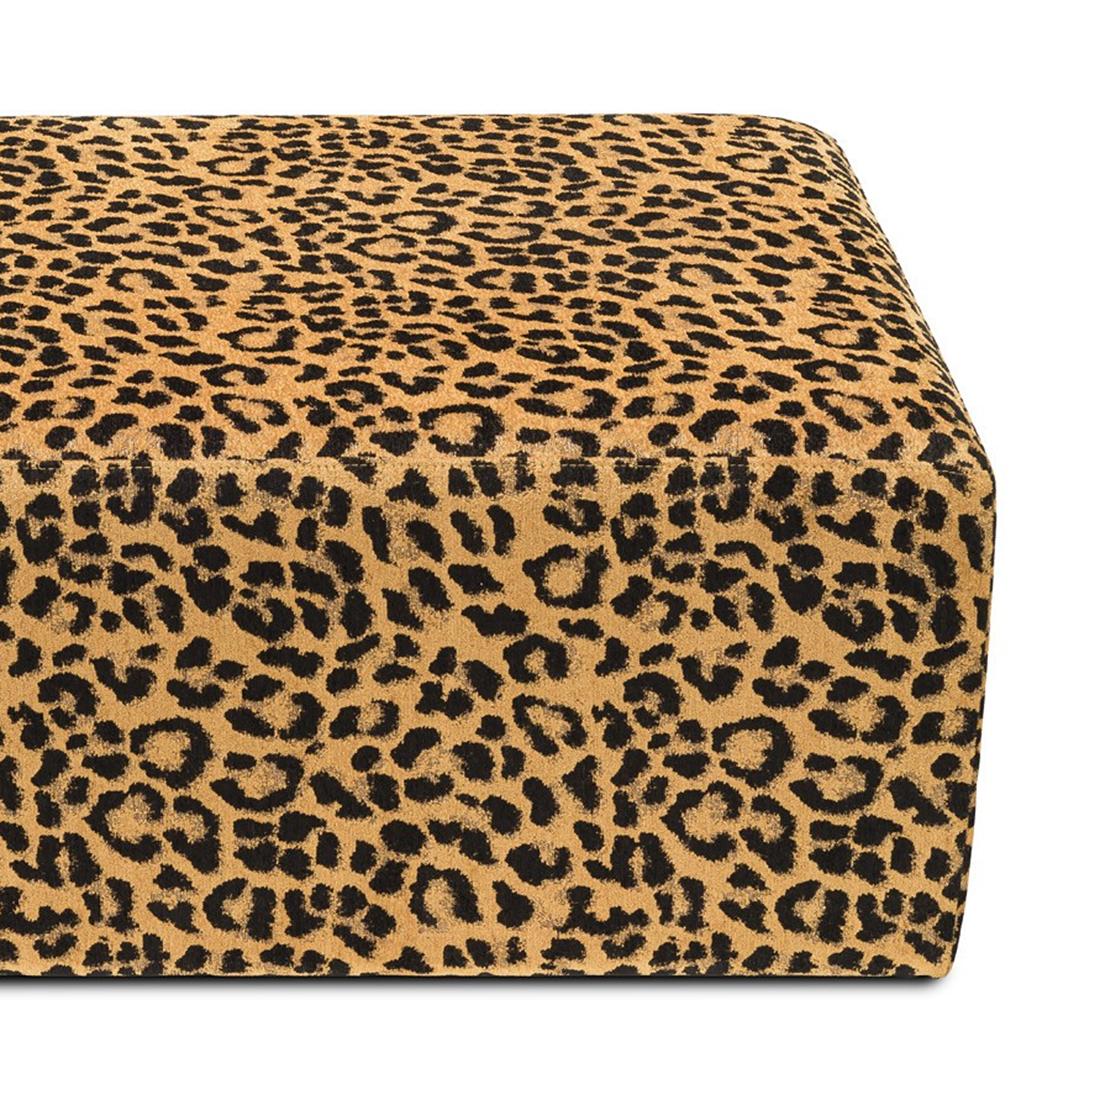 pouf leopard